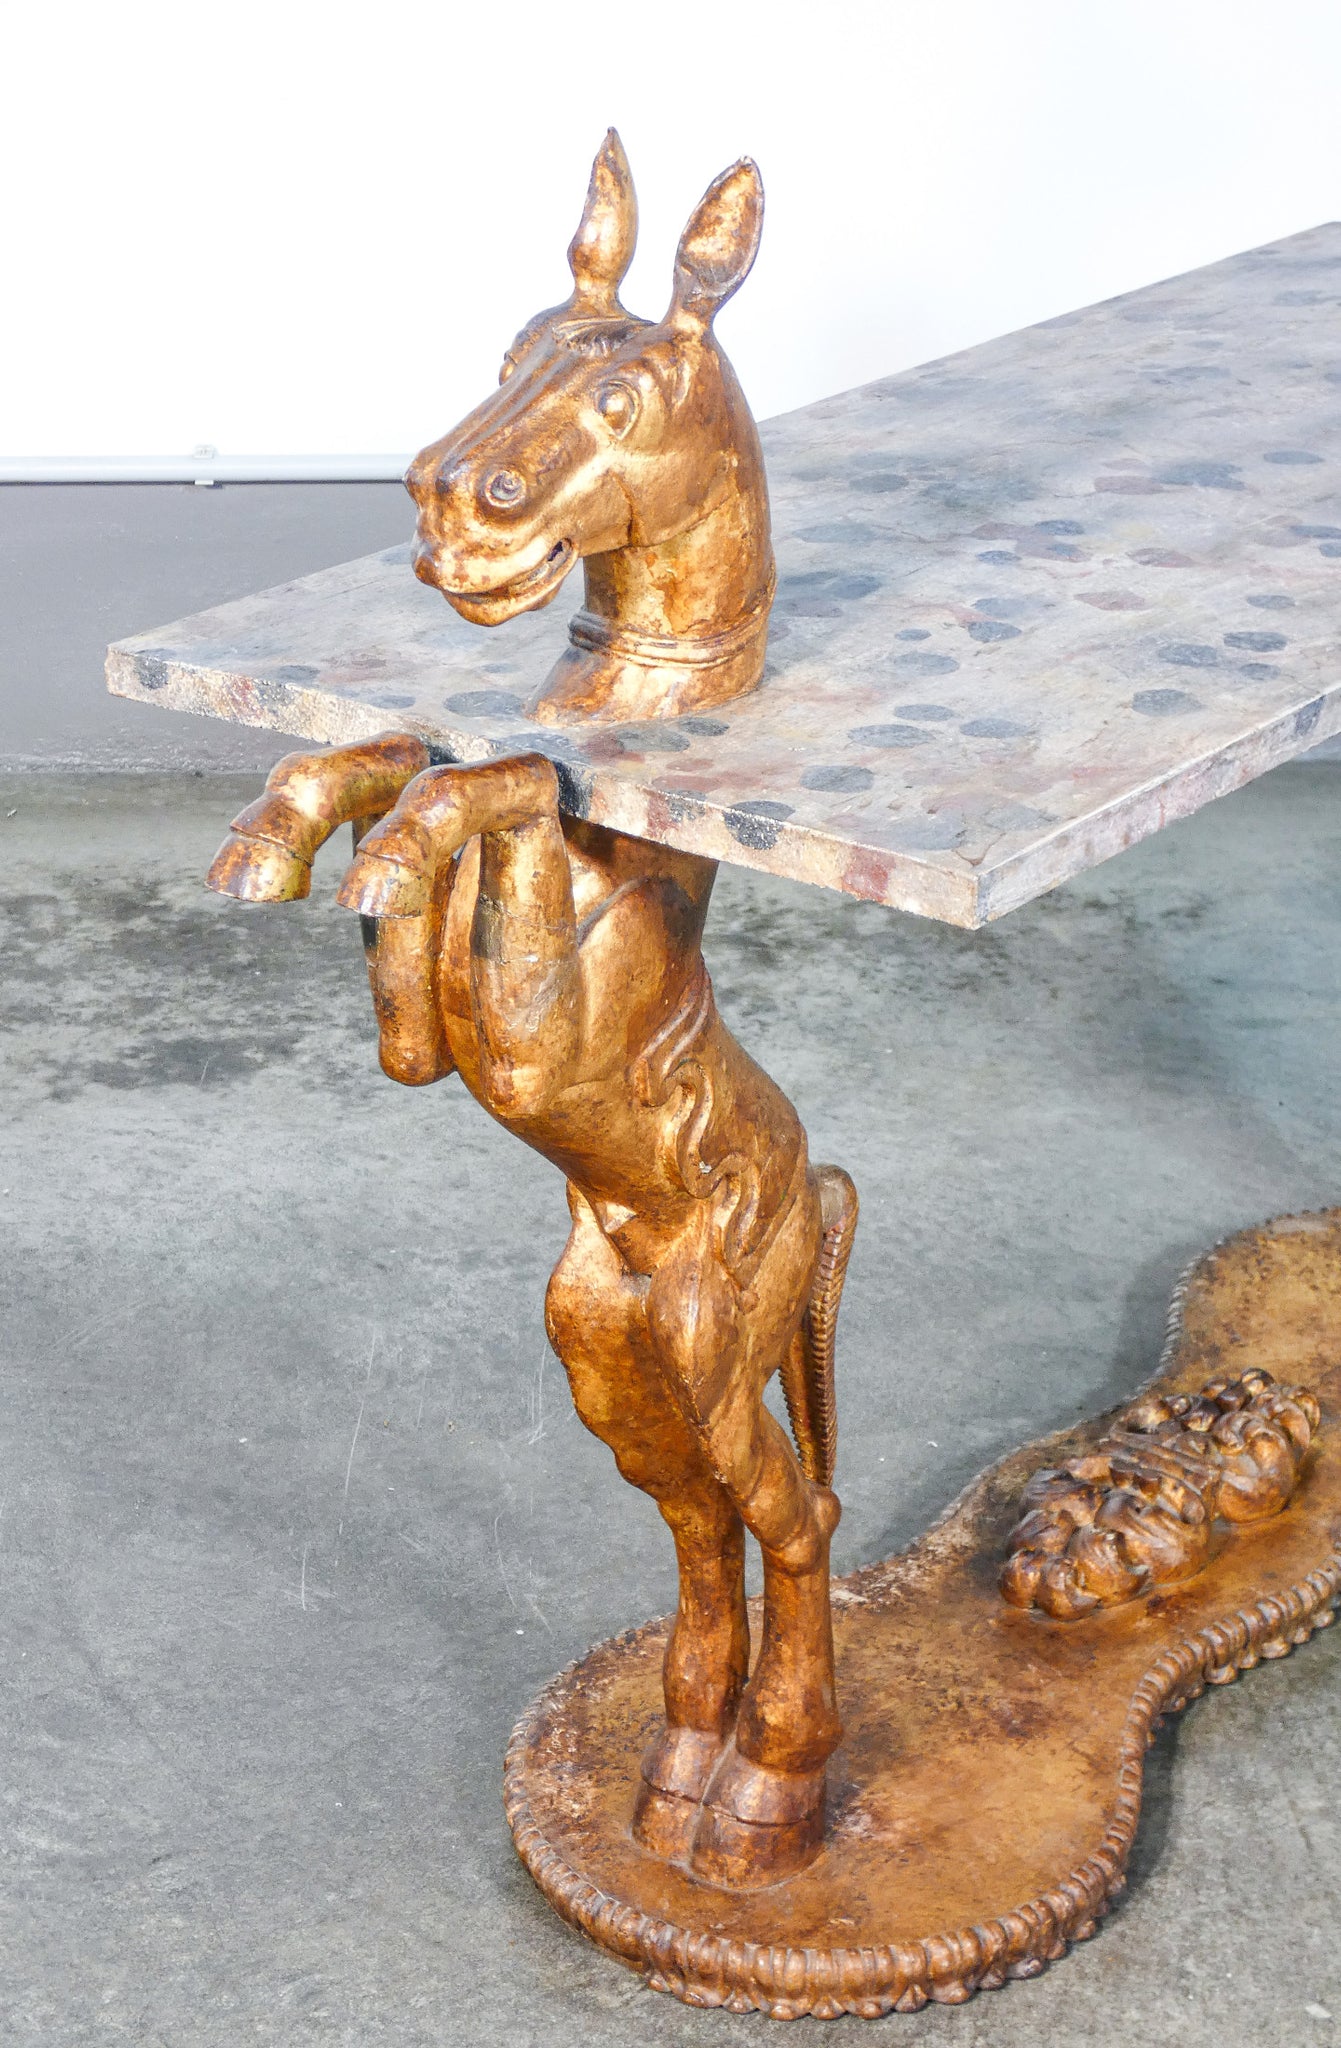 tavolino console sculture statue cavalli rampanti piano marmorizzato 1800